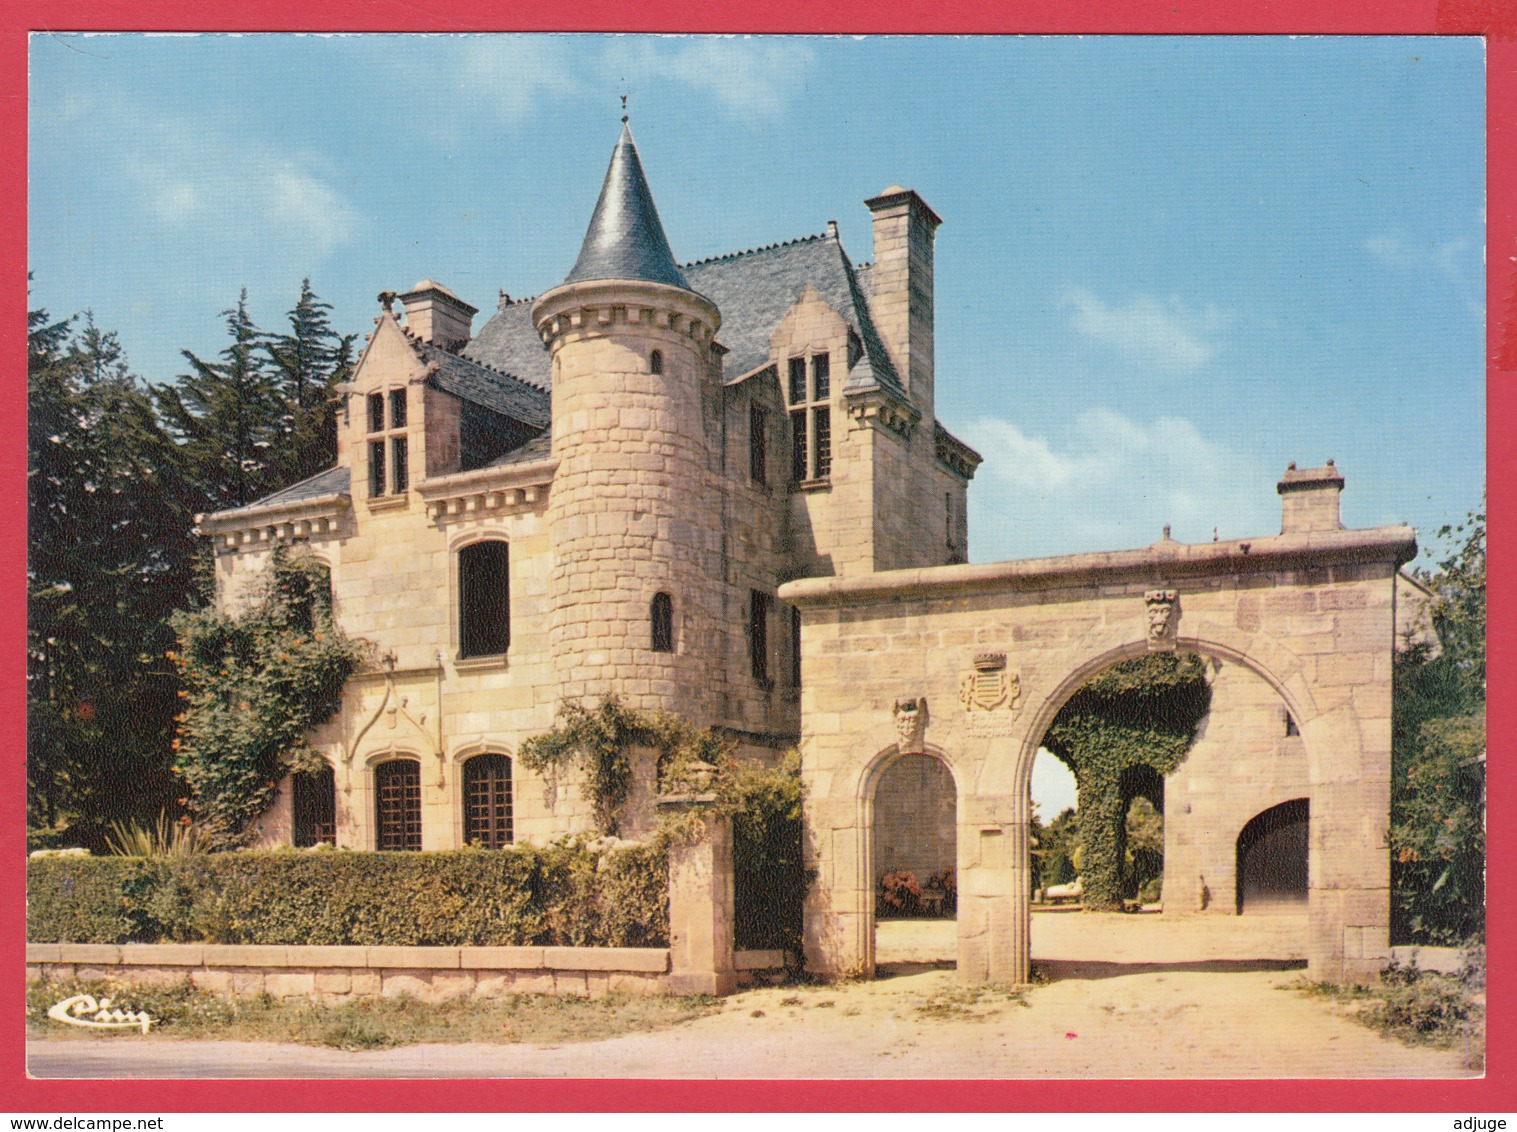 56-PLUVIGNER- Le Château De Rimaison  *SUP* 2 Scans - Pluvigner